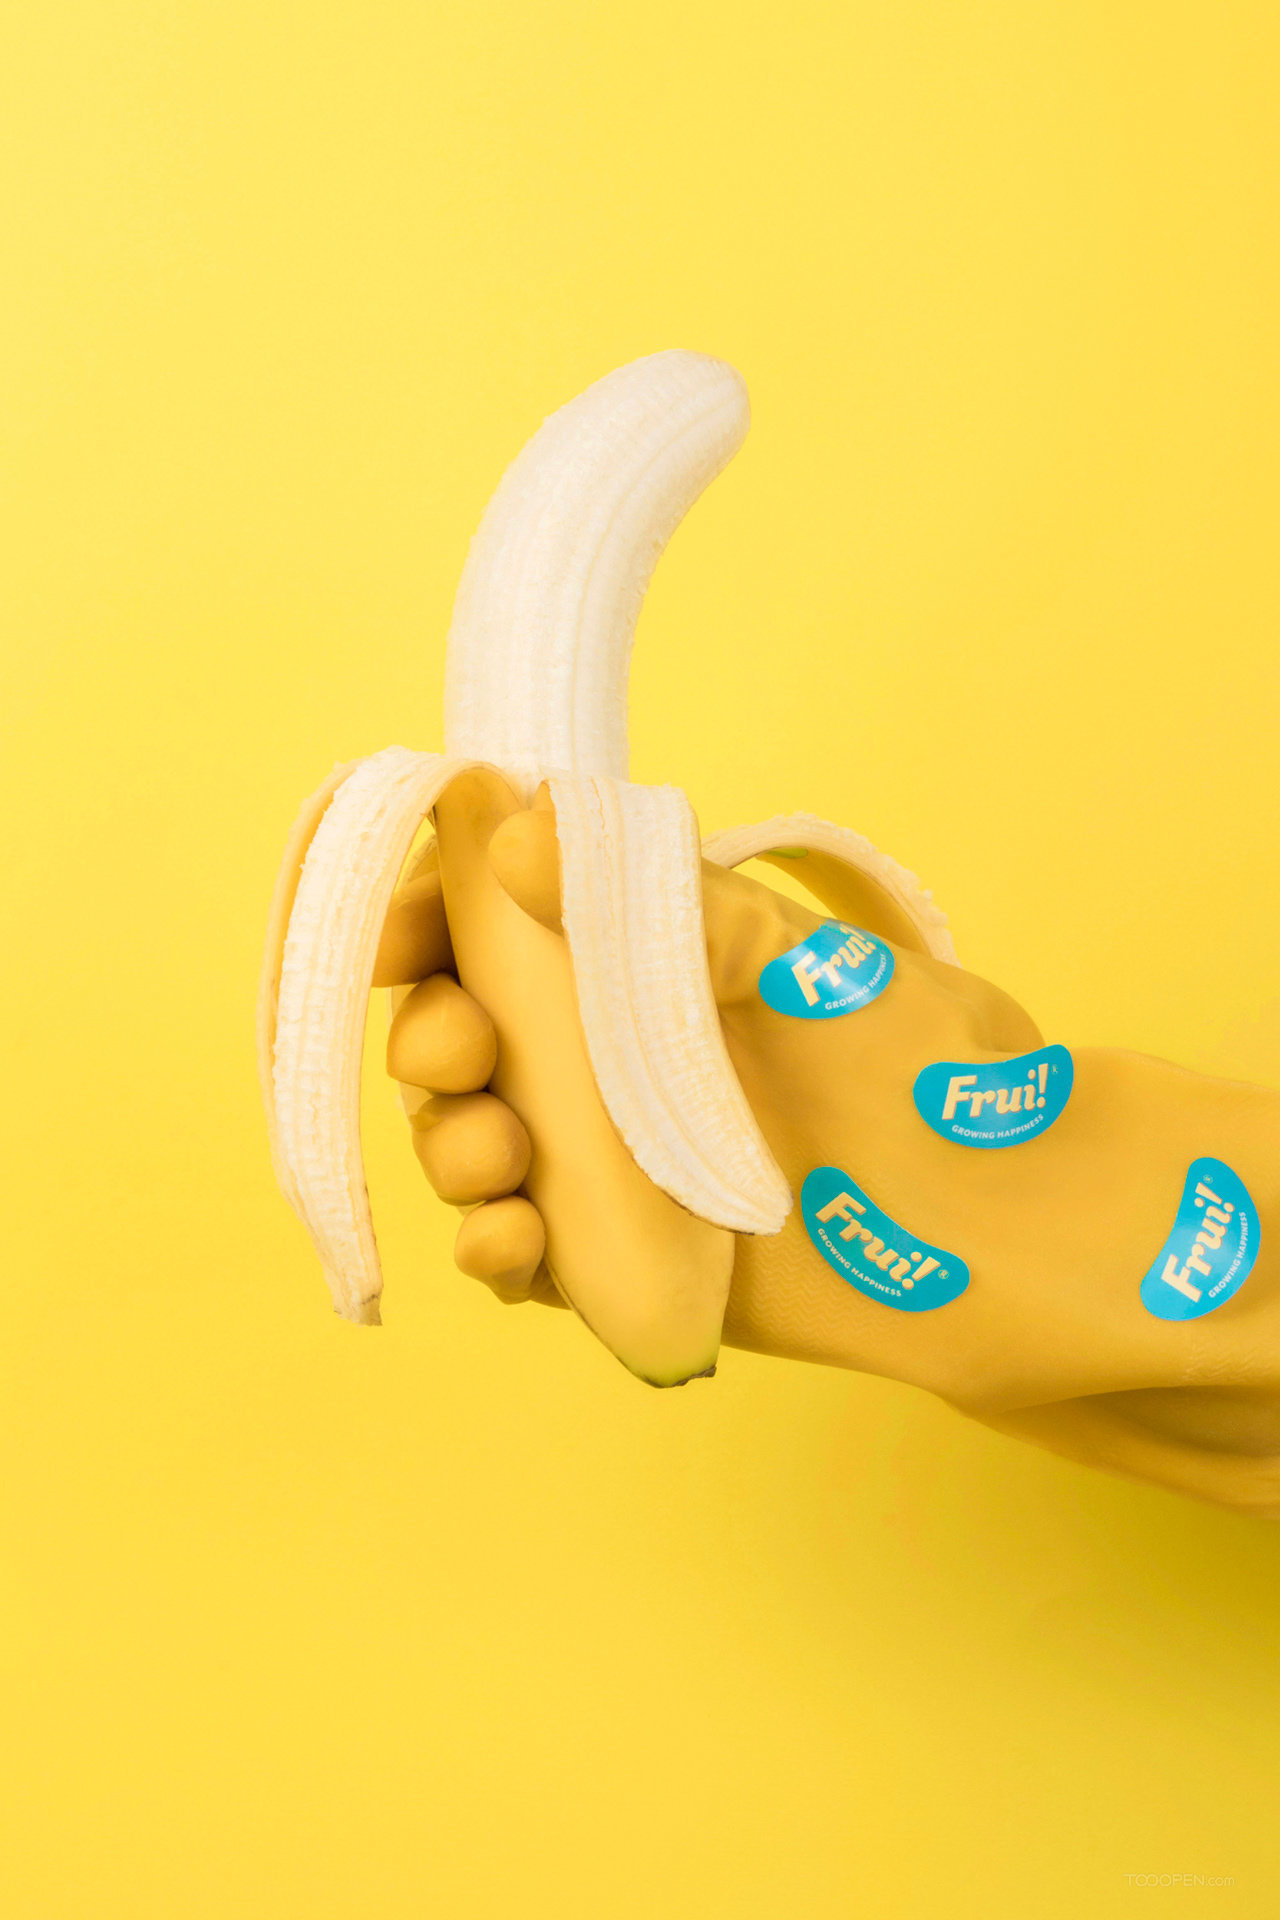 香蕉自由新鲜水果食品包装设计作品欣赏-09